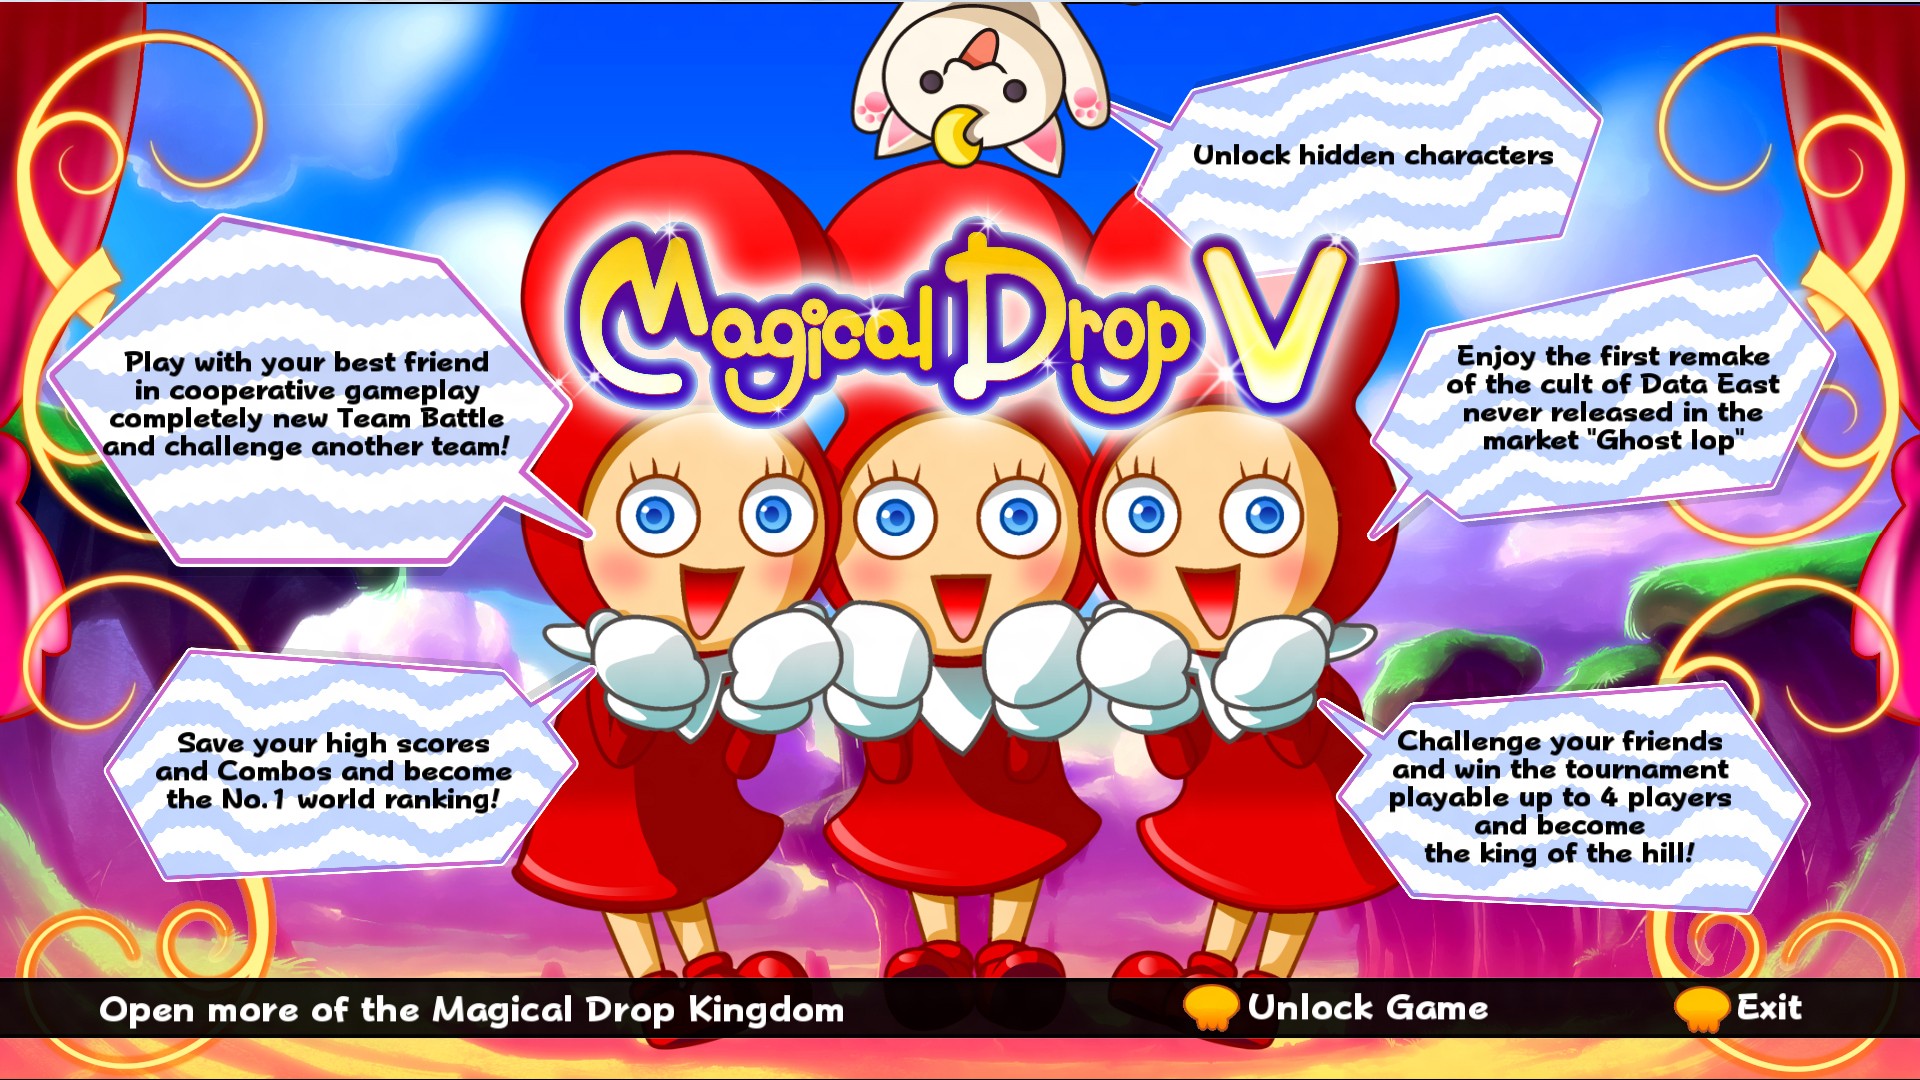 download magical drop v